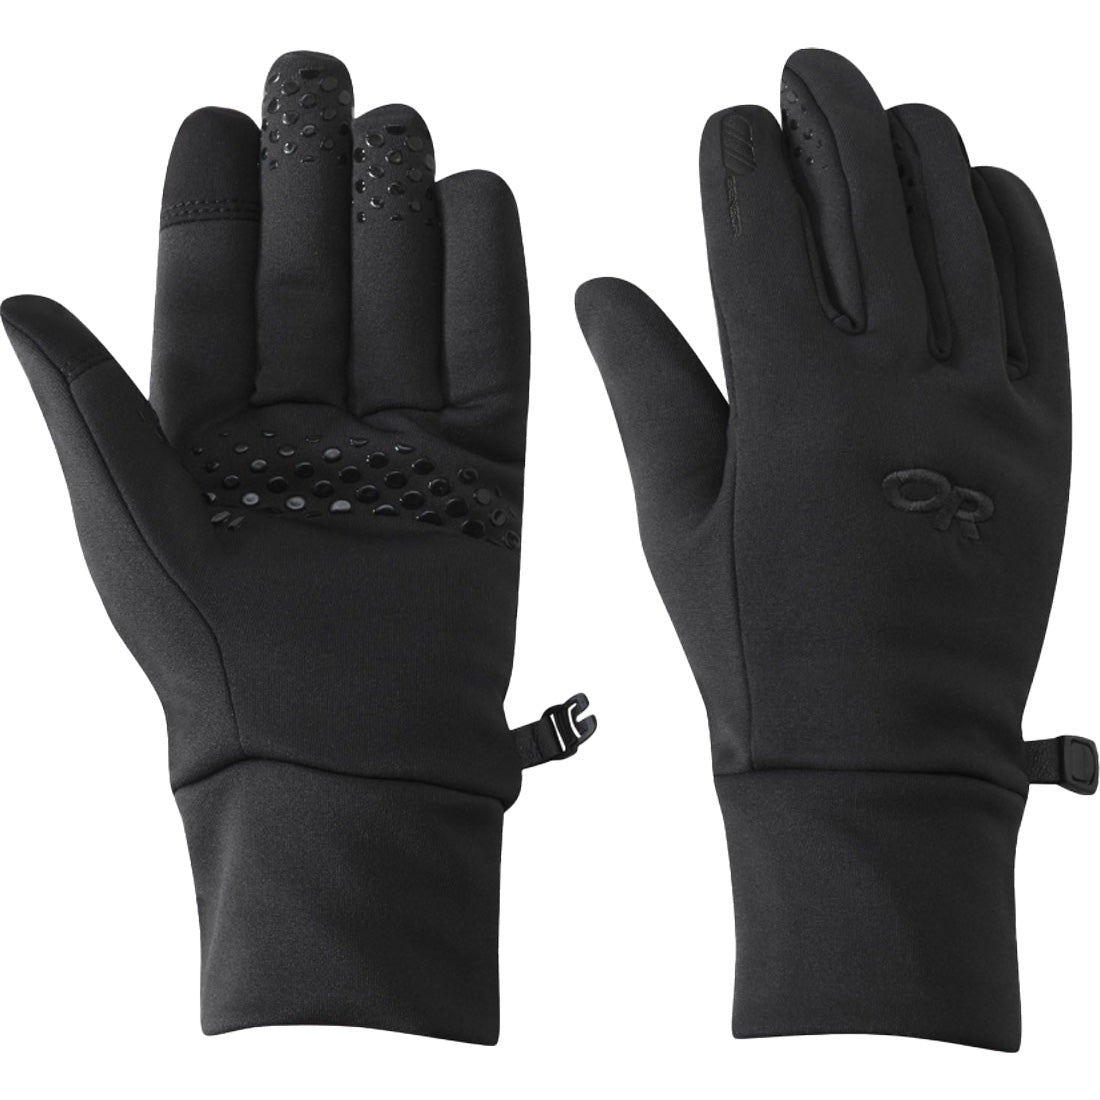 Outdoor Research Vigor Heavyweight Sensor Glove - Women's